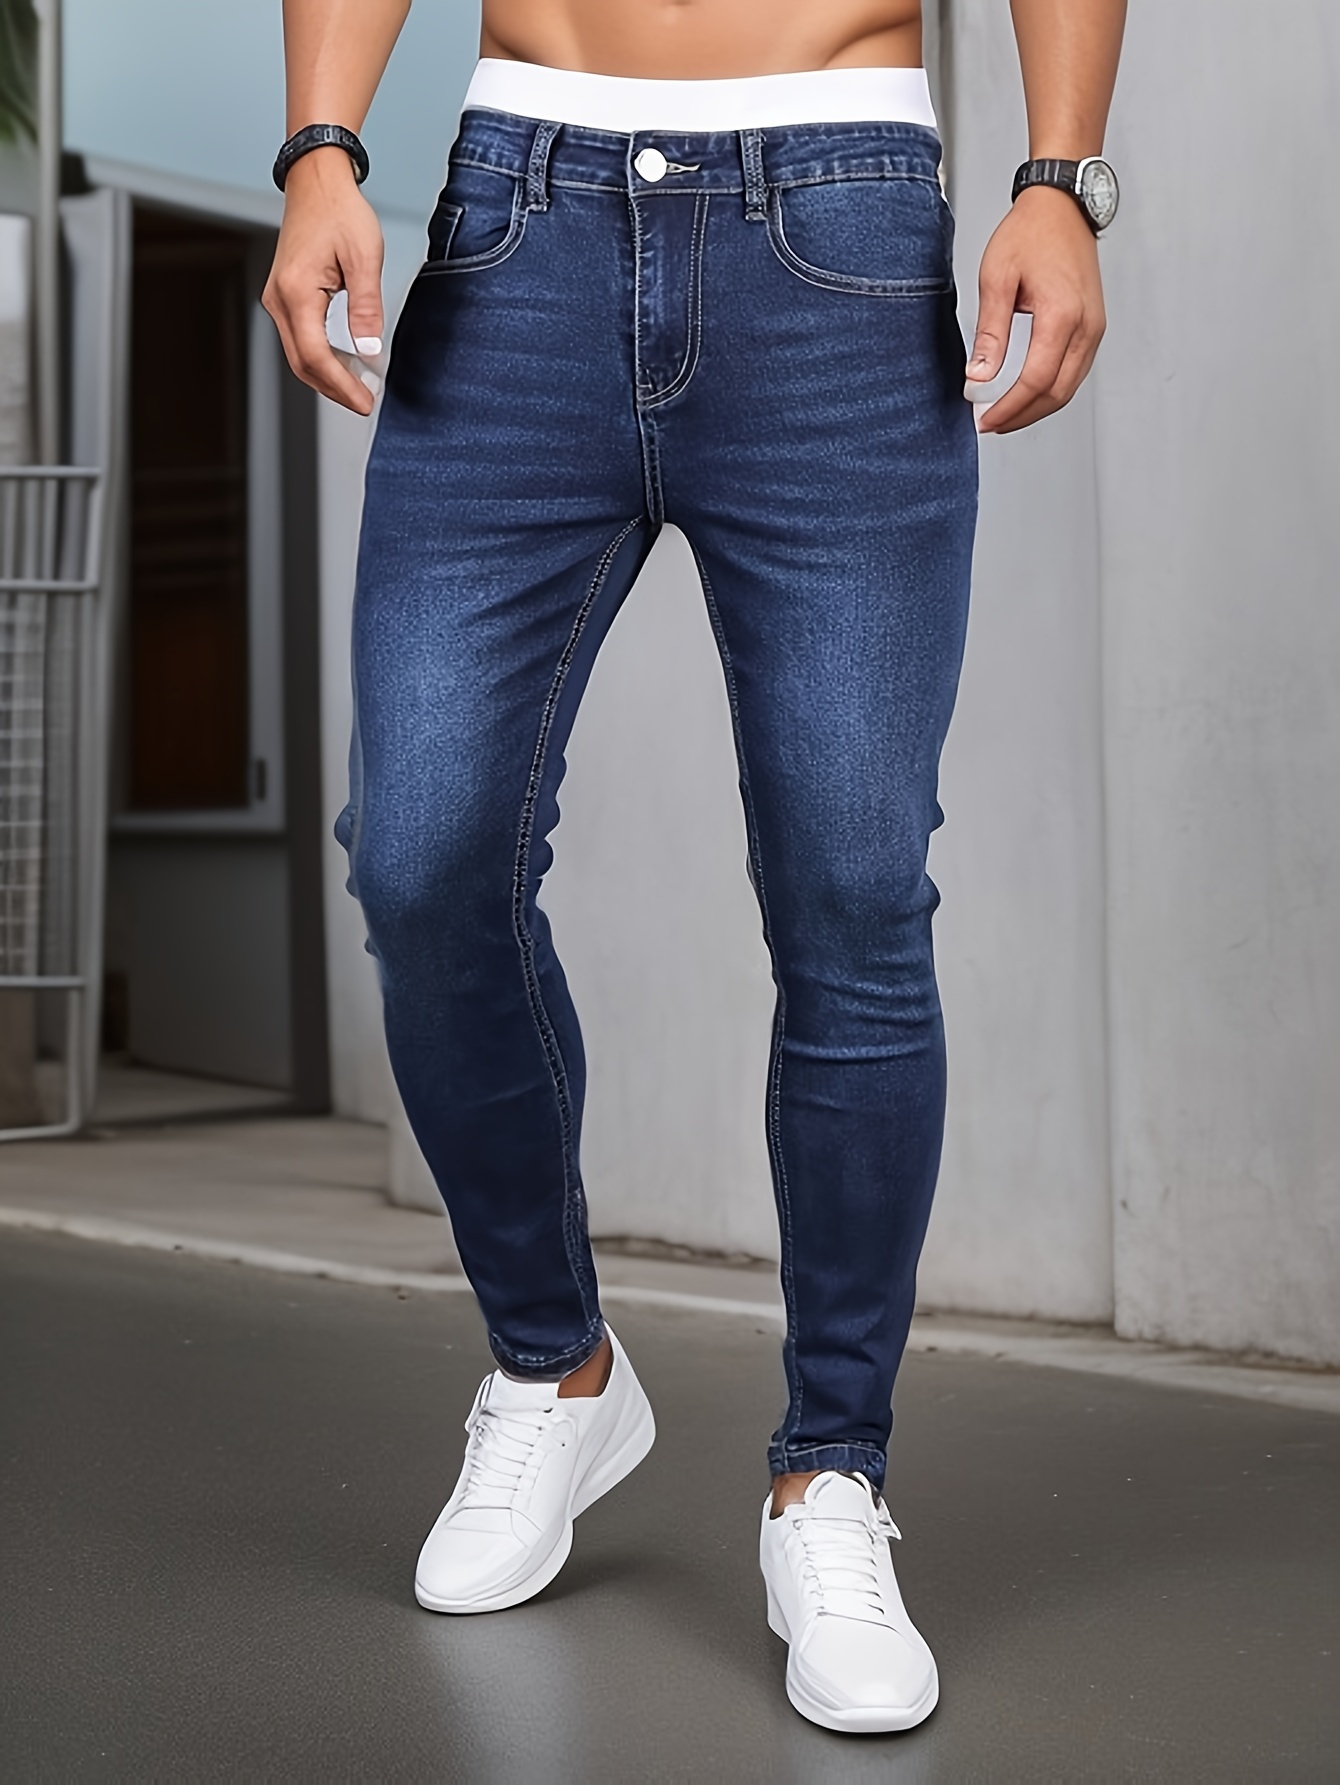 Pantalones de mezclilla/ jeans/ vaqueros pegados/entallados, delgados y  medianamente flexibles. Ropa para hombres.